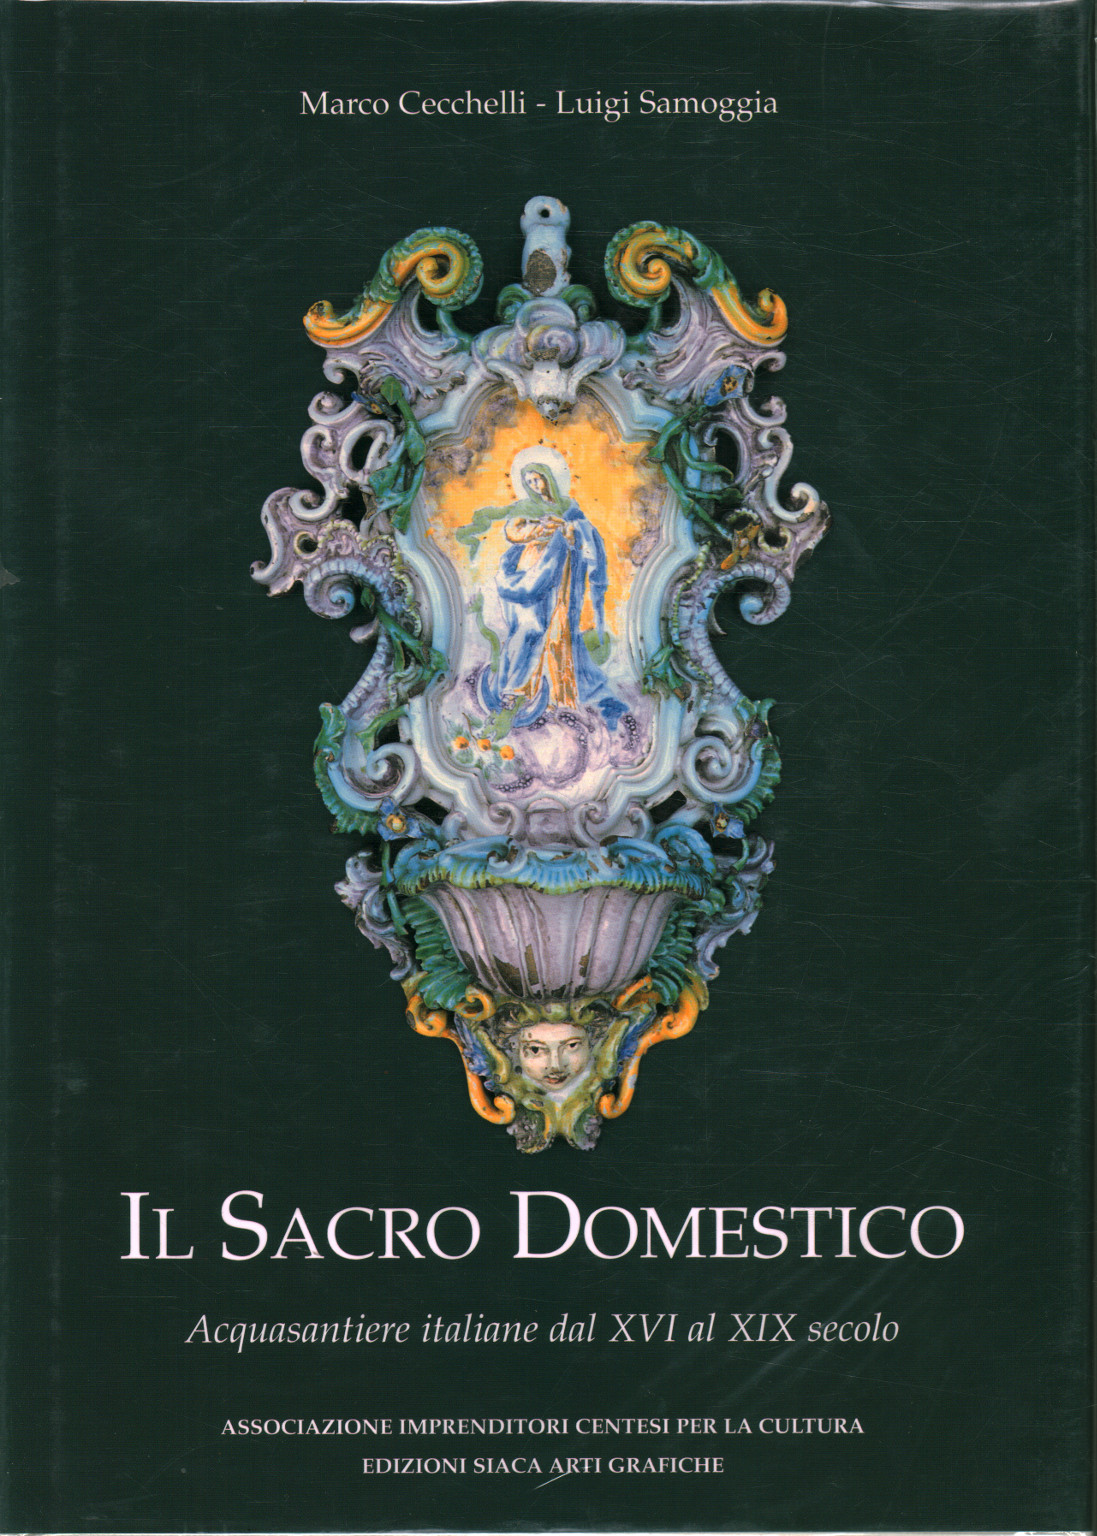 The Sacred Domestic, Marco Cecchelli Luigi Samoggia